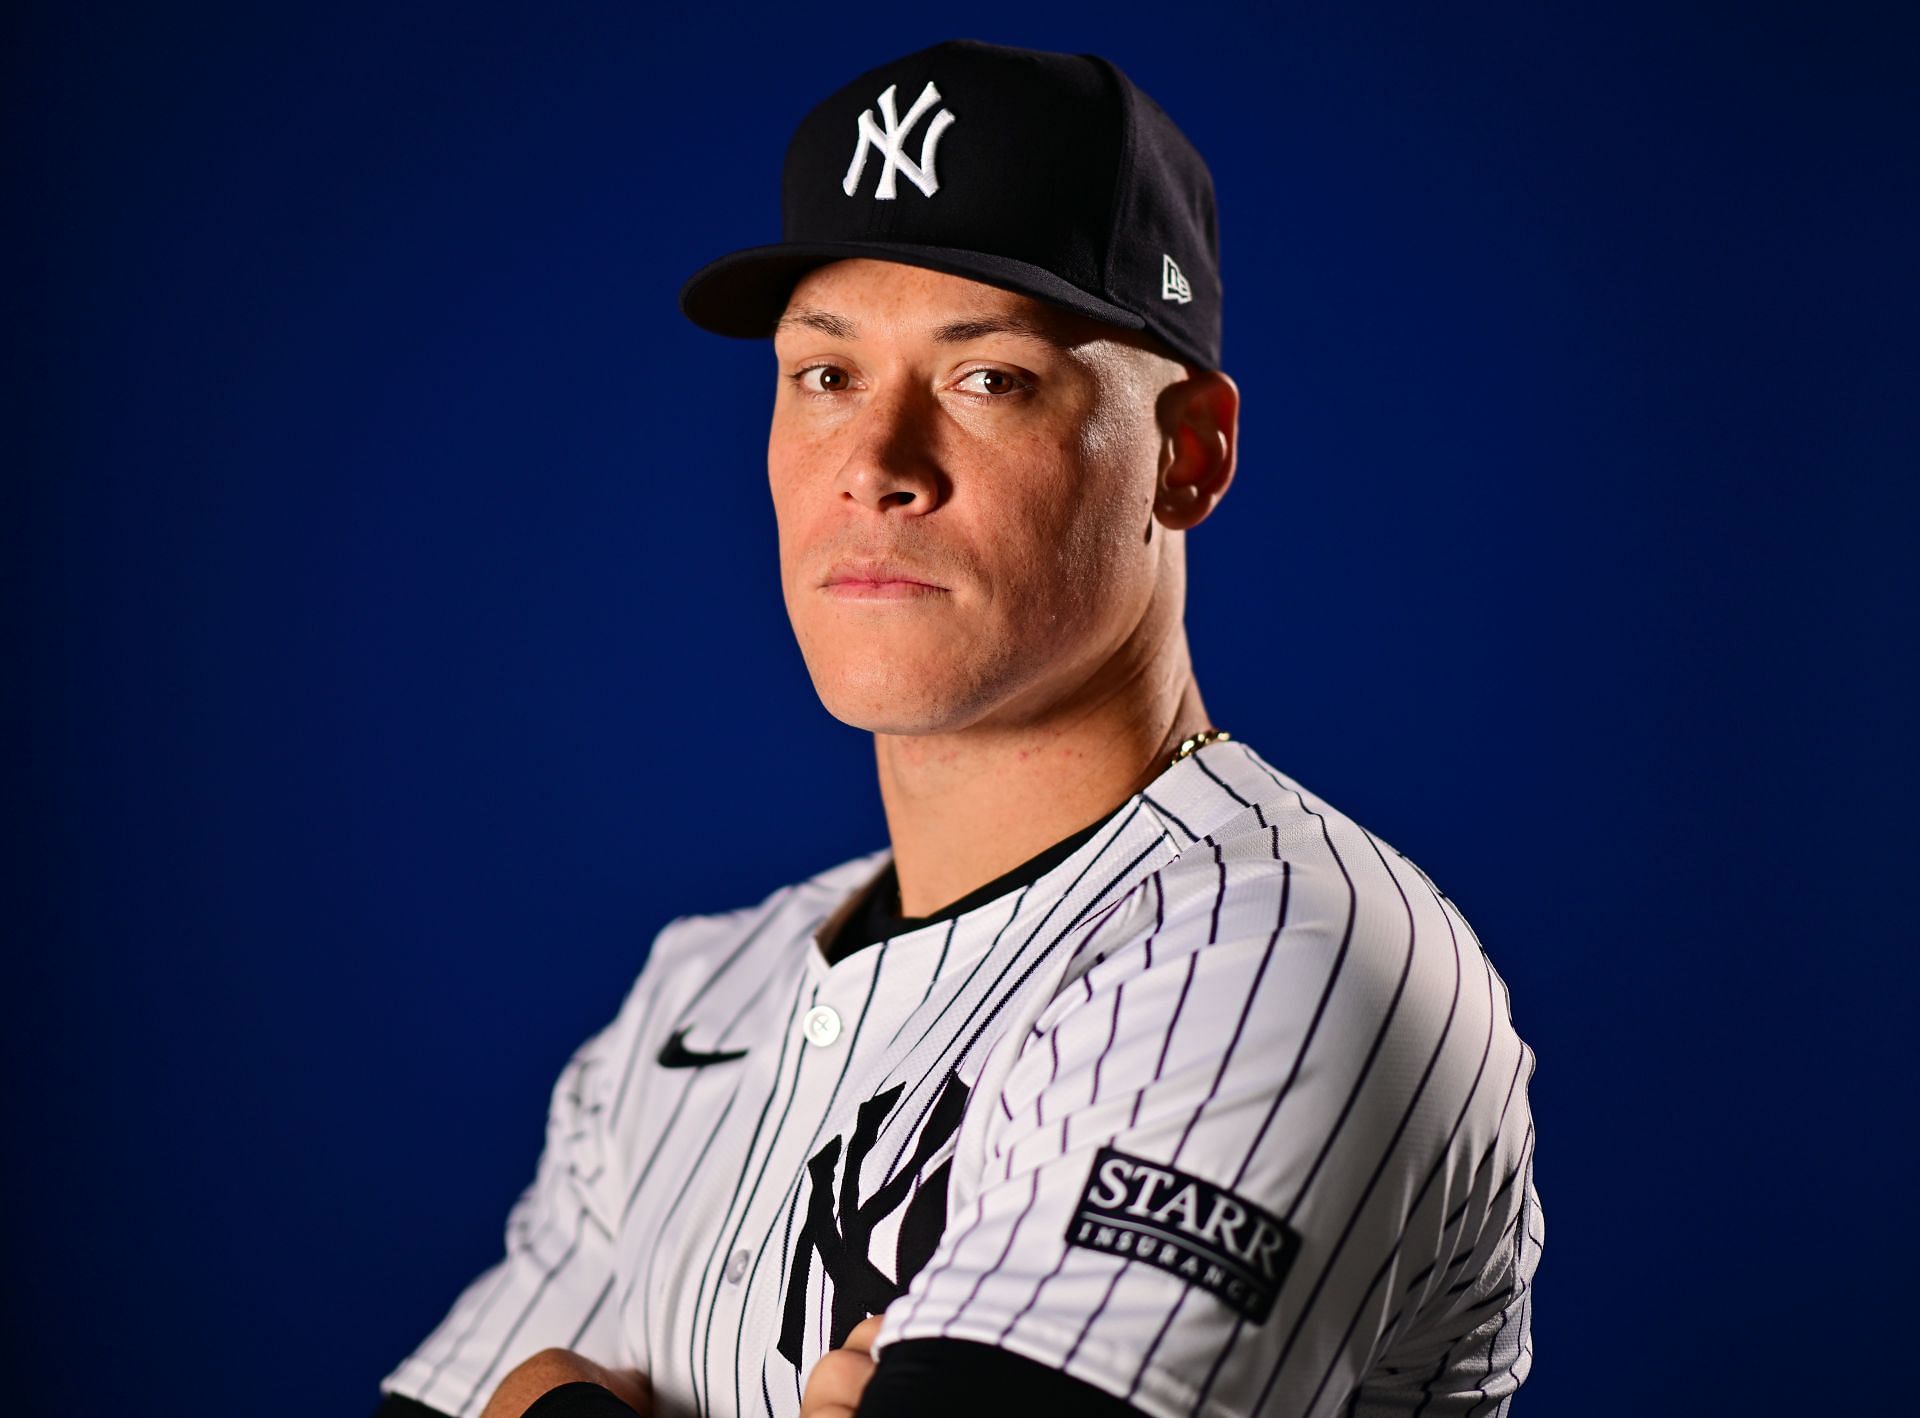 New York Yankees Photo Day